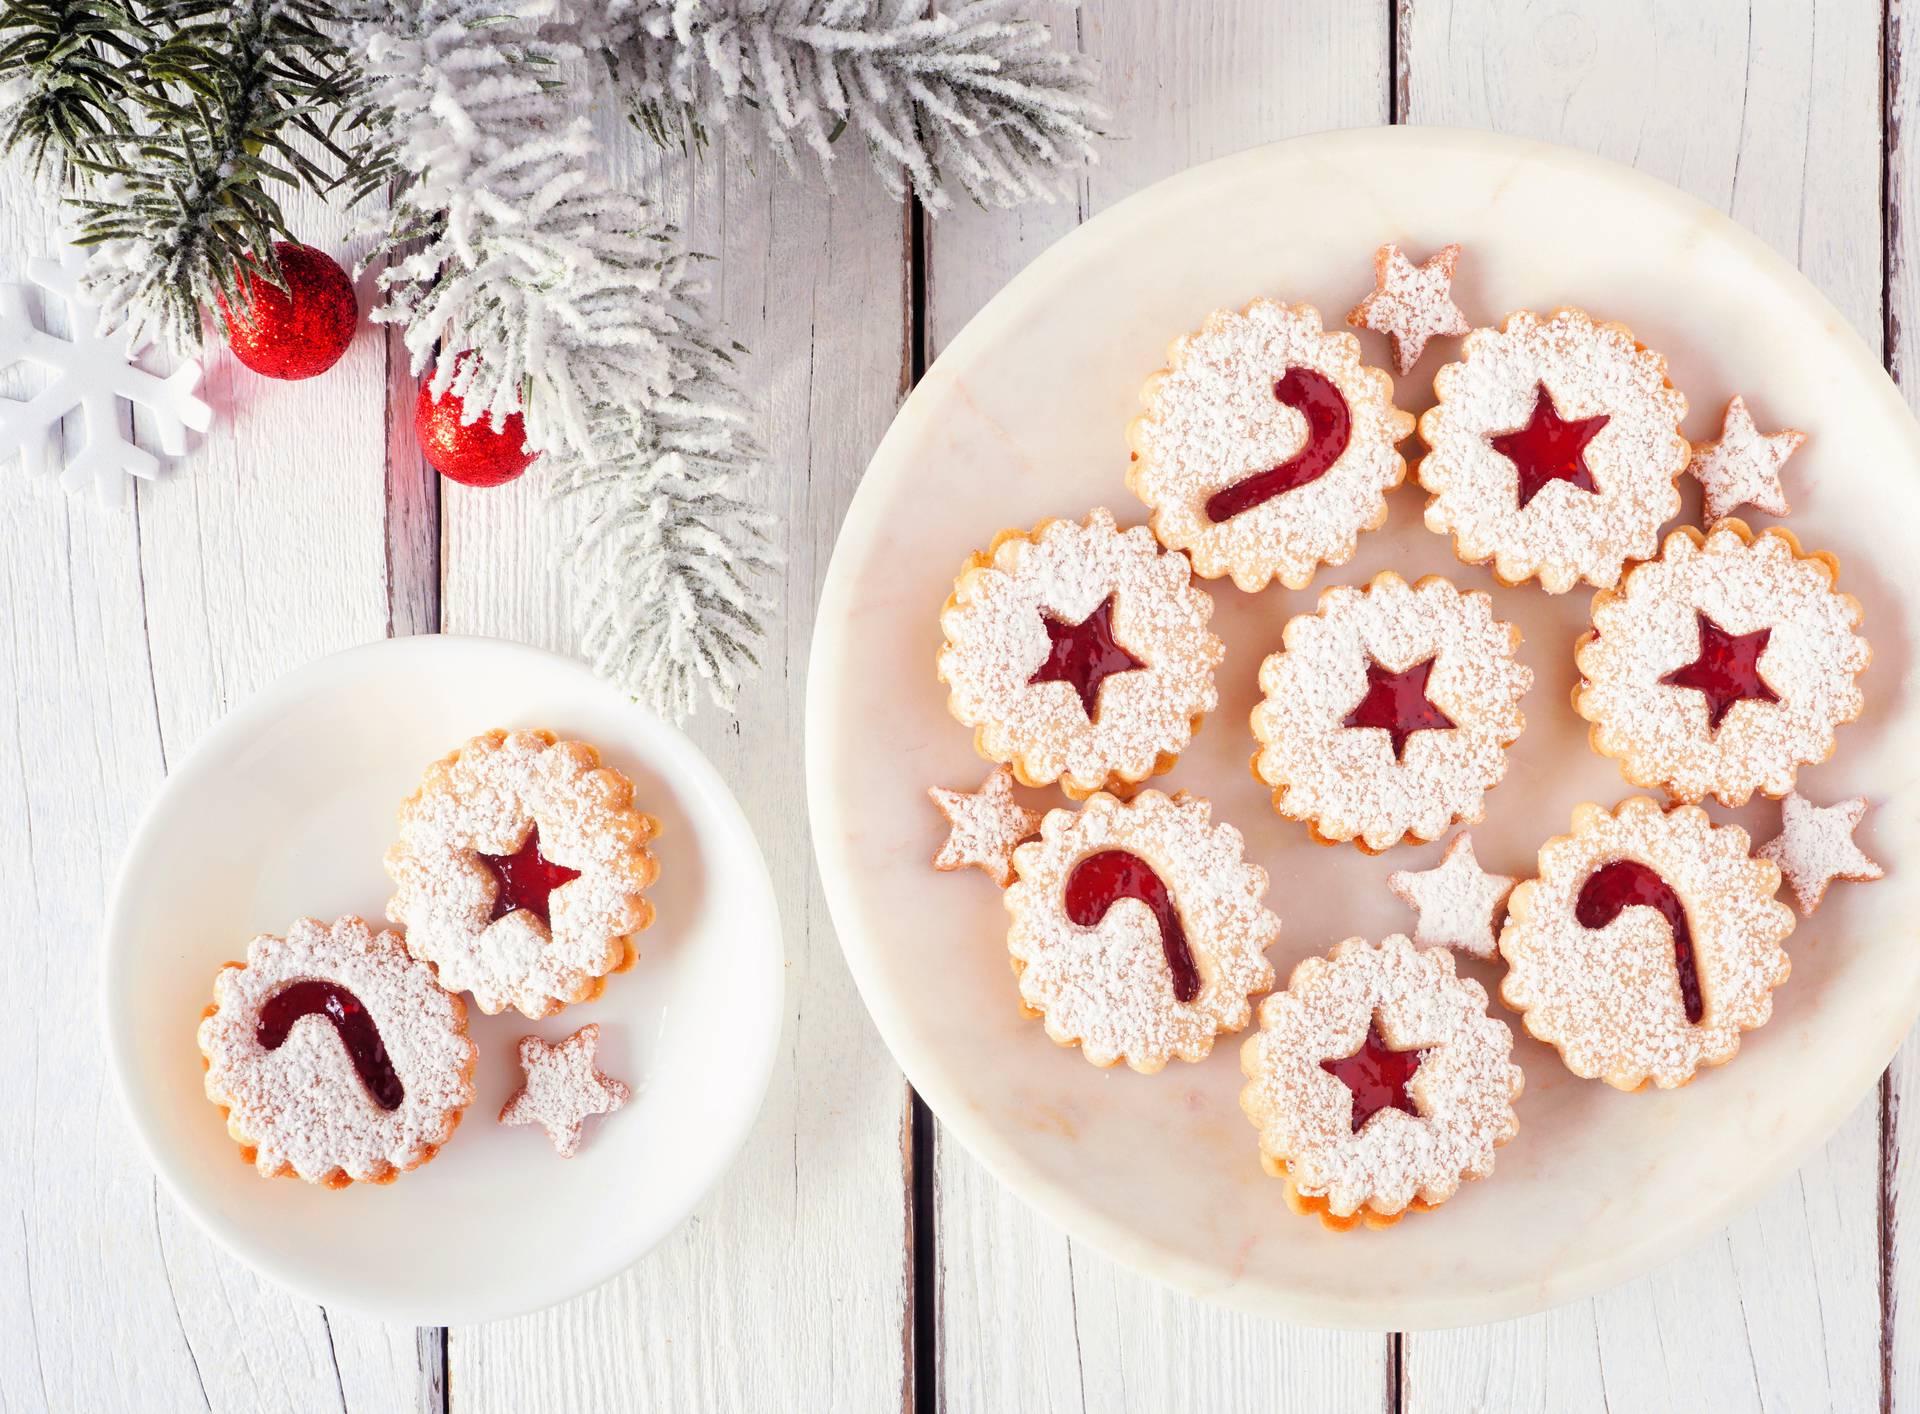 Suhi božićni kolači: Blagdani nisu vrijeme za vaganje šećera